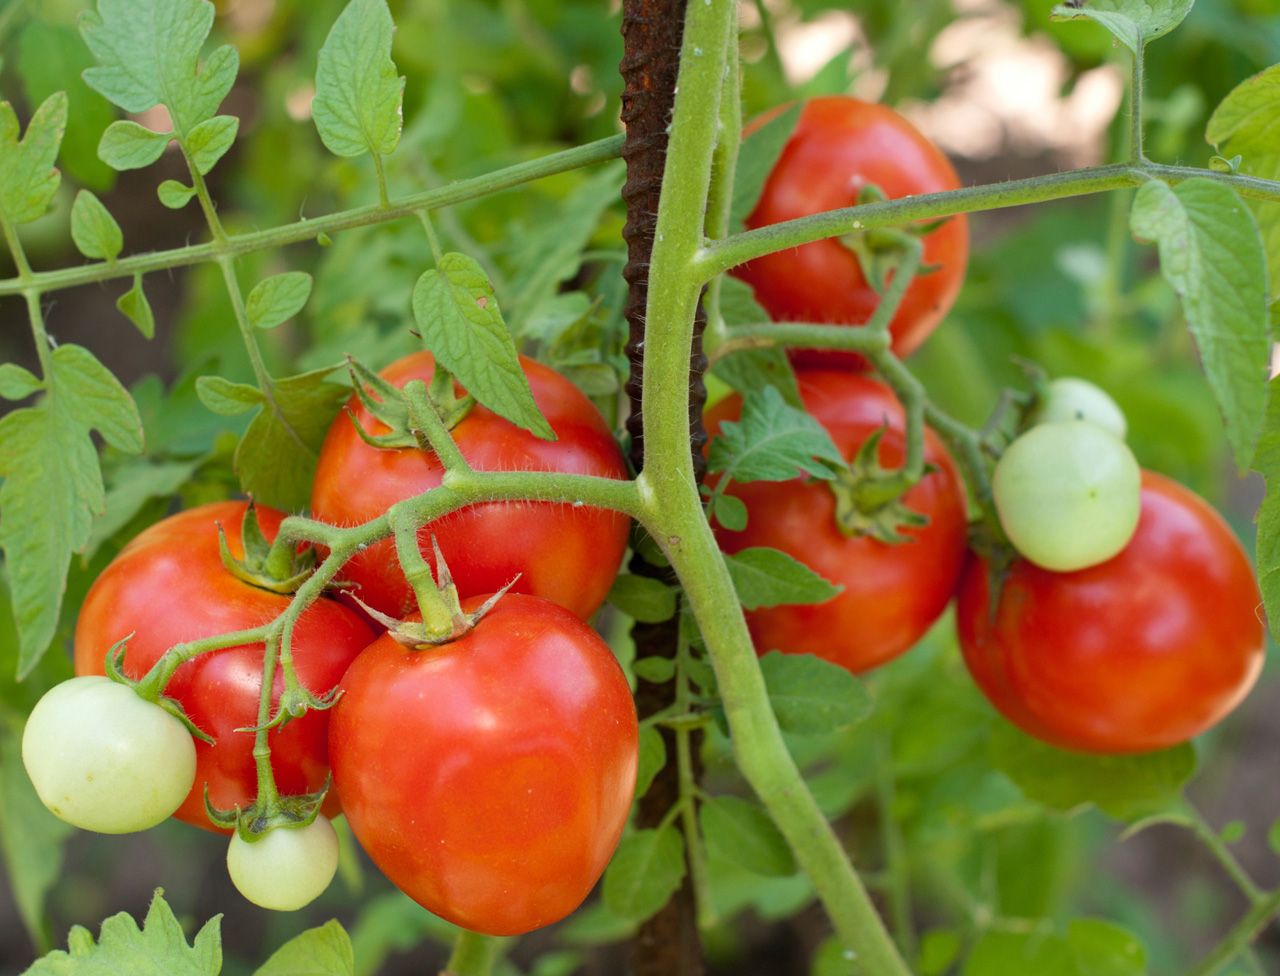 Siin on ÕIGE VIIS tomatite istutamiseks (ja taimede kõrguseks on 2 meetrit).